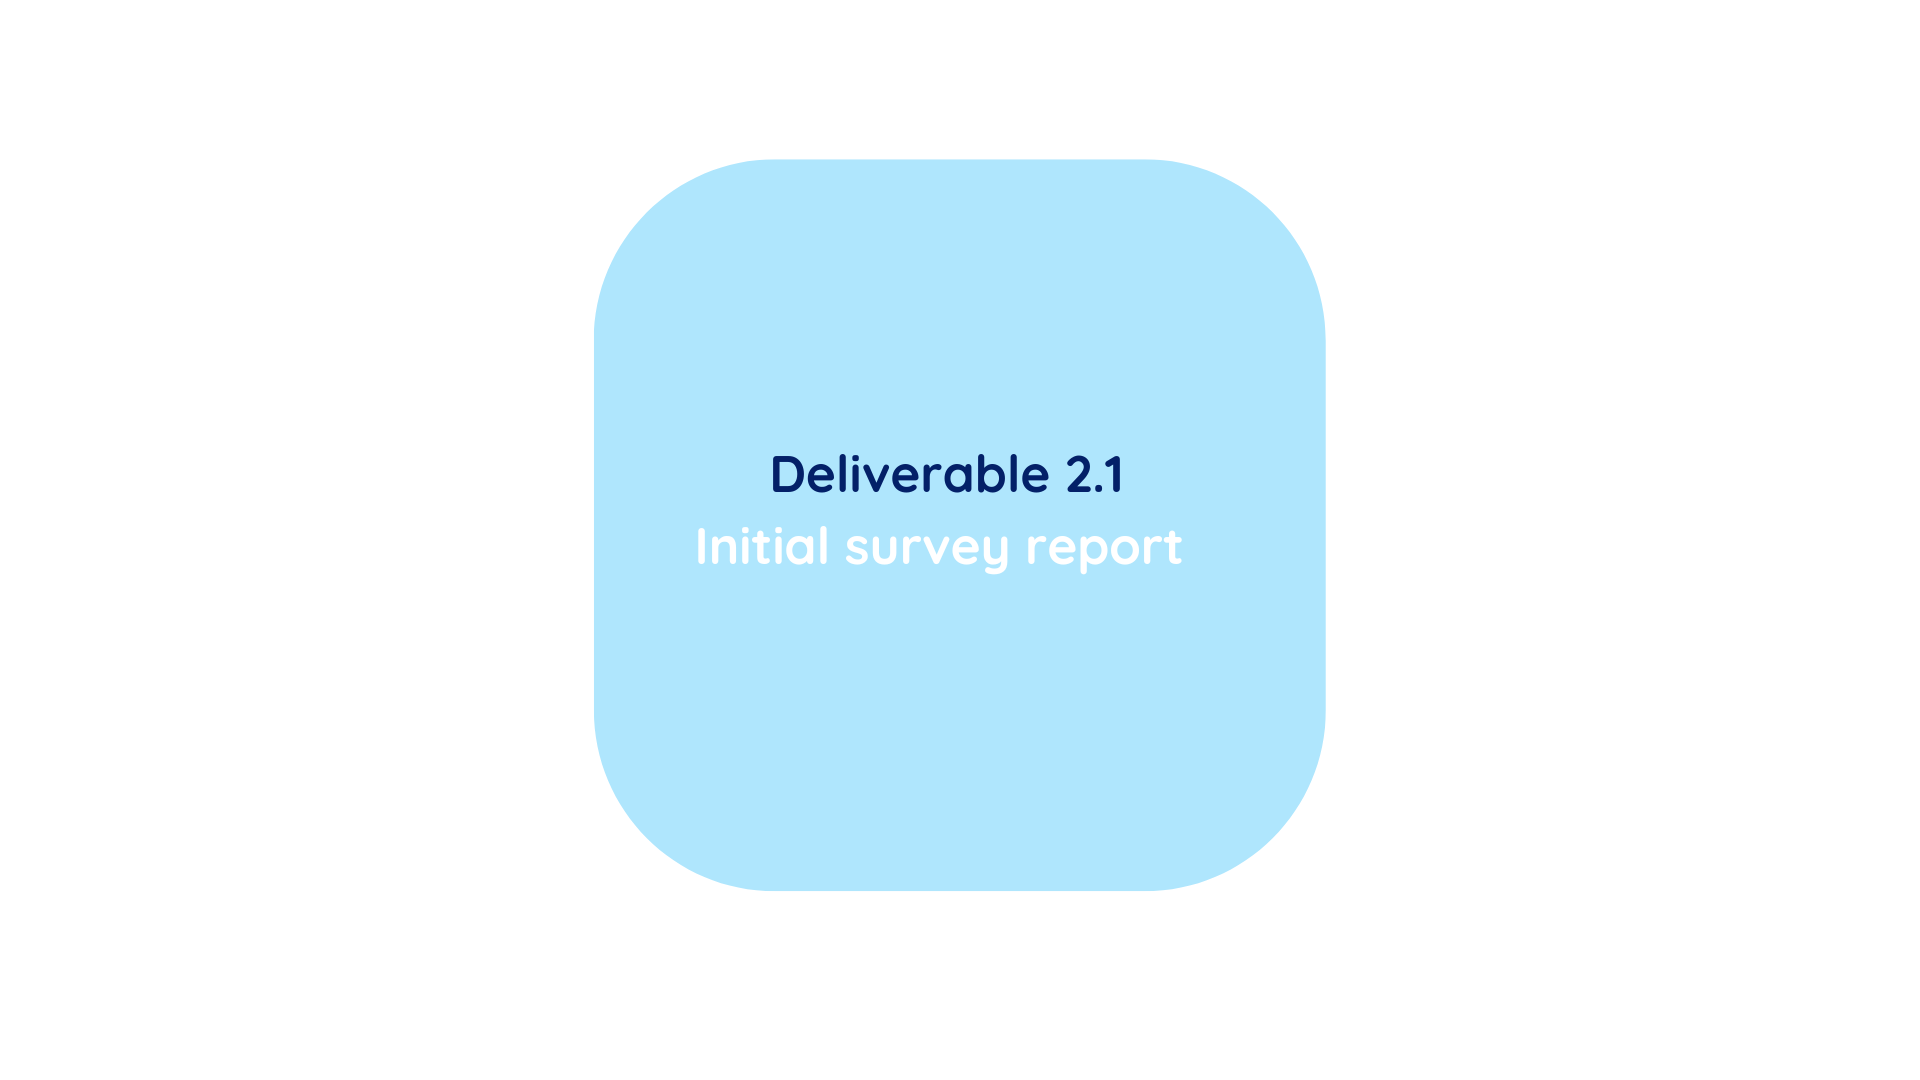 deliverable 2.1 - Initial survey